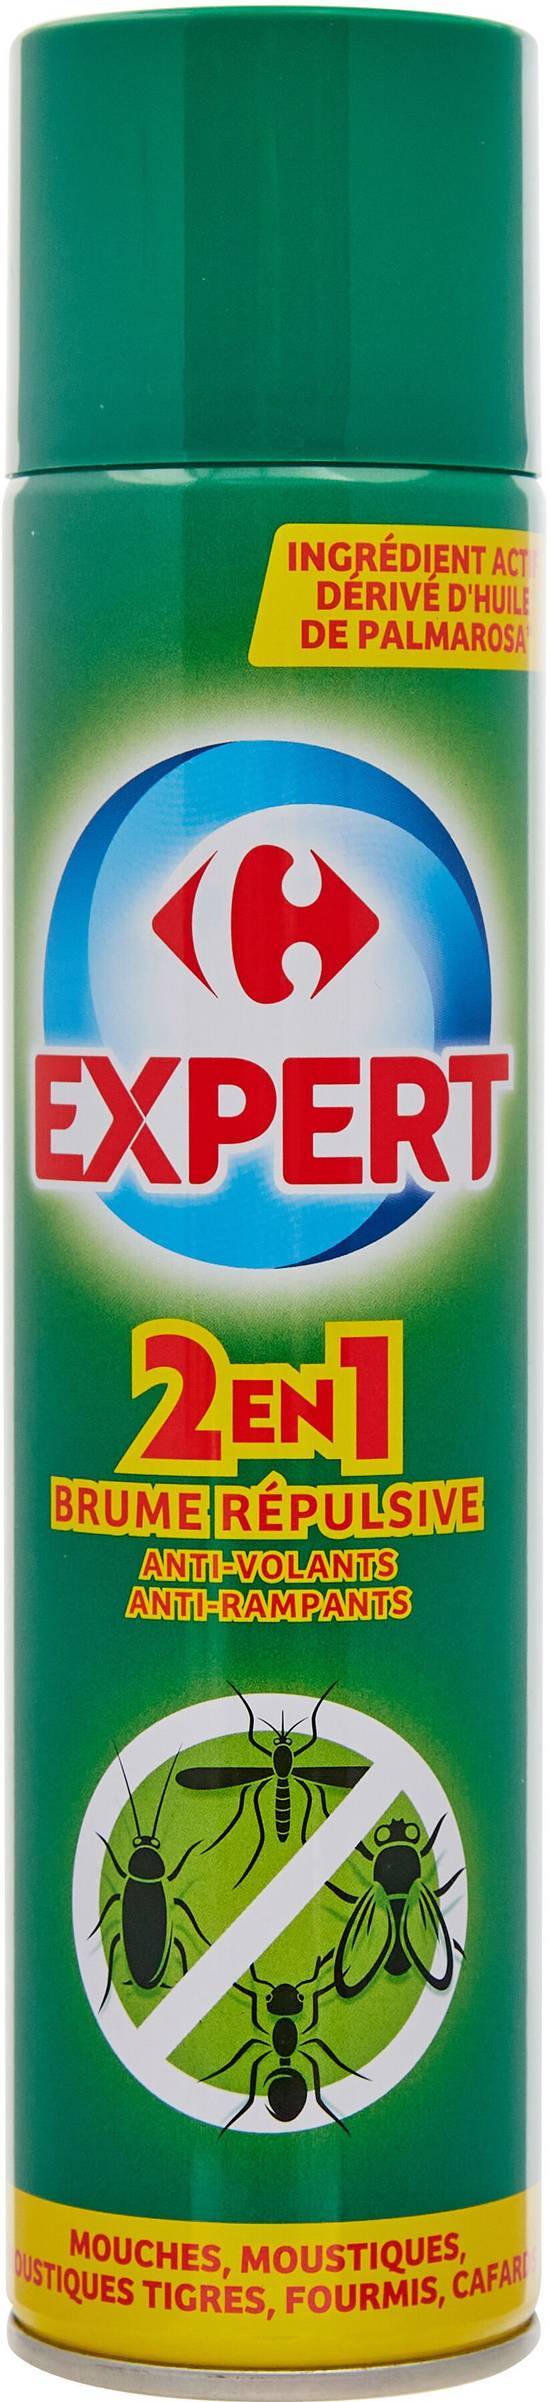 Carrefour Expert - Insecticide 2 en 1 anti volants et rampants